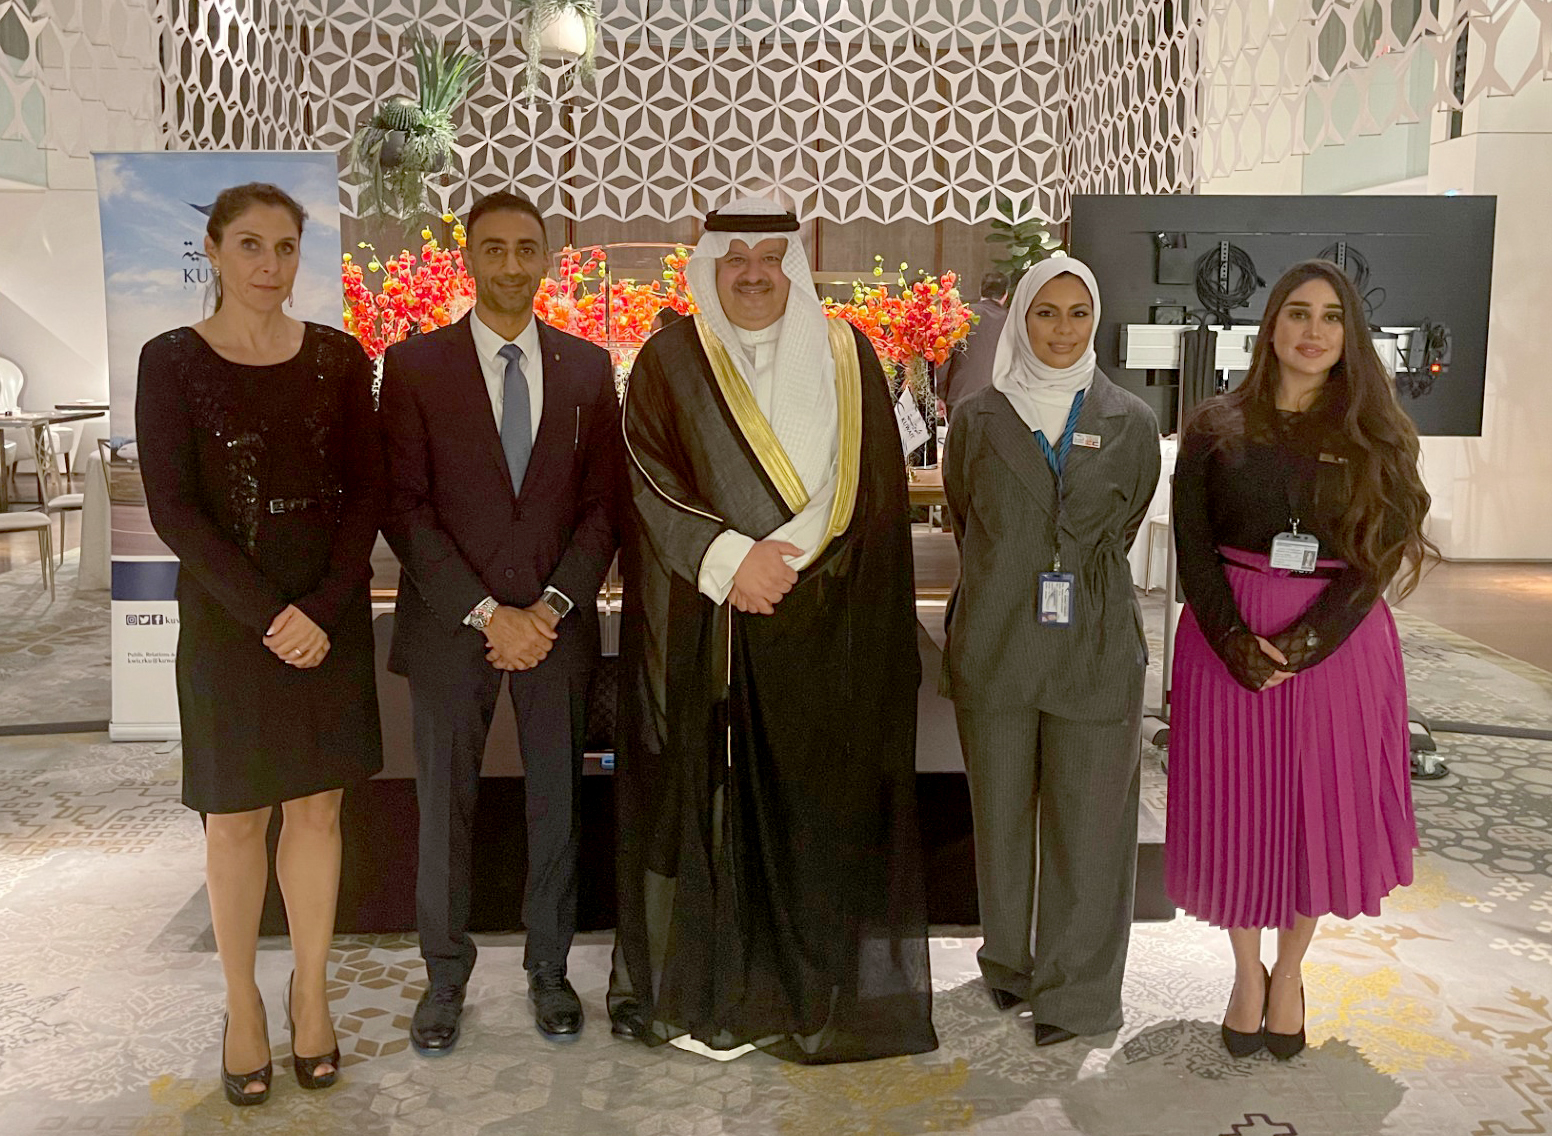 سفير الكويت لدى إسبانيا خليفة الخرافي والمدير الإقليمي لمملكتي إسبانيا والمغرب في الخطوط الجوية الكويتية معاذ الراشد خلال الحفل